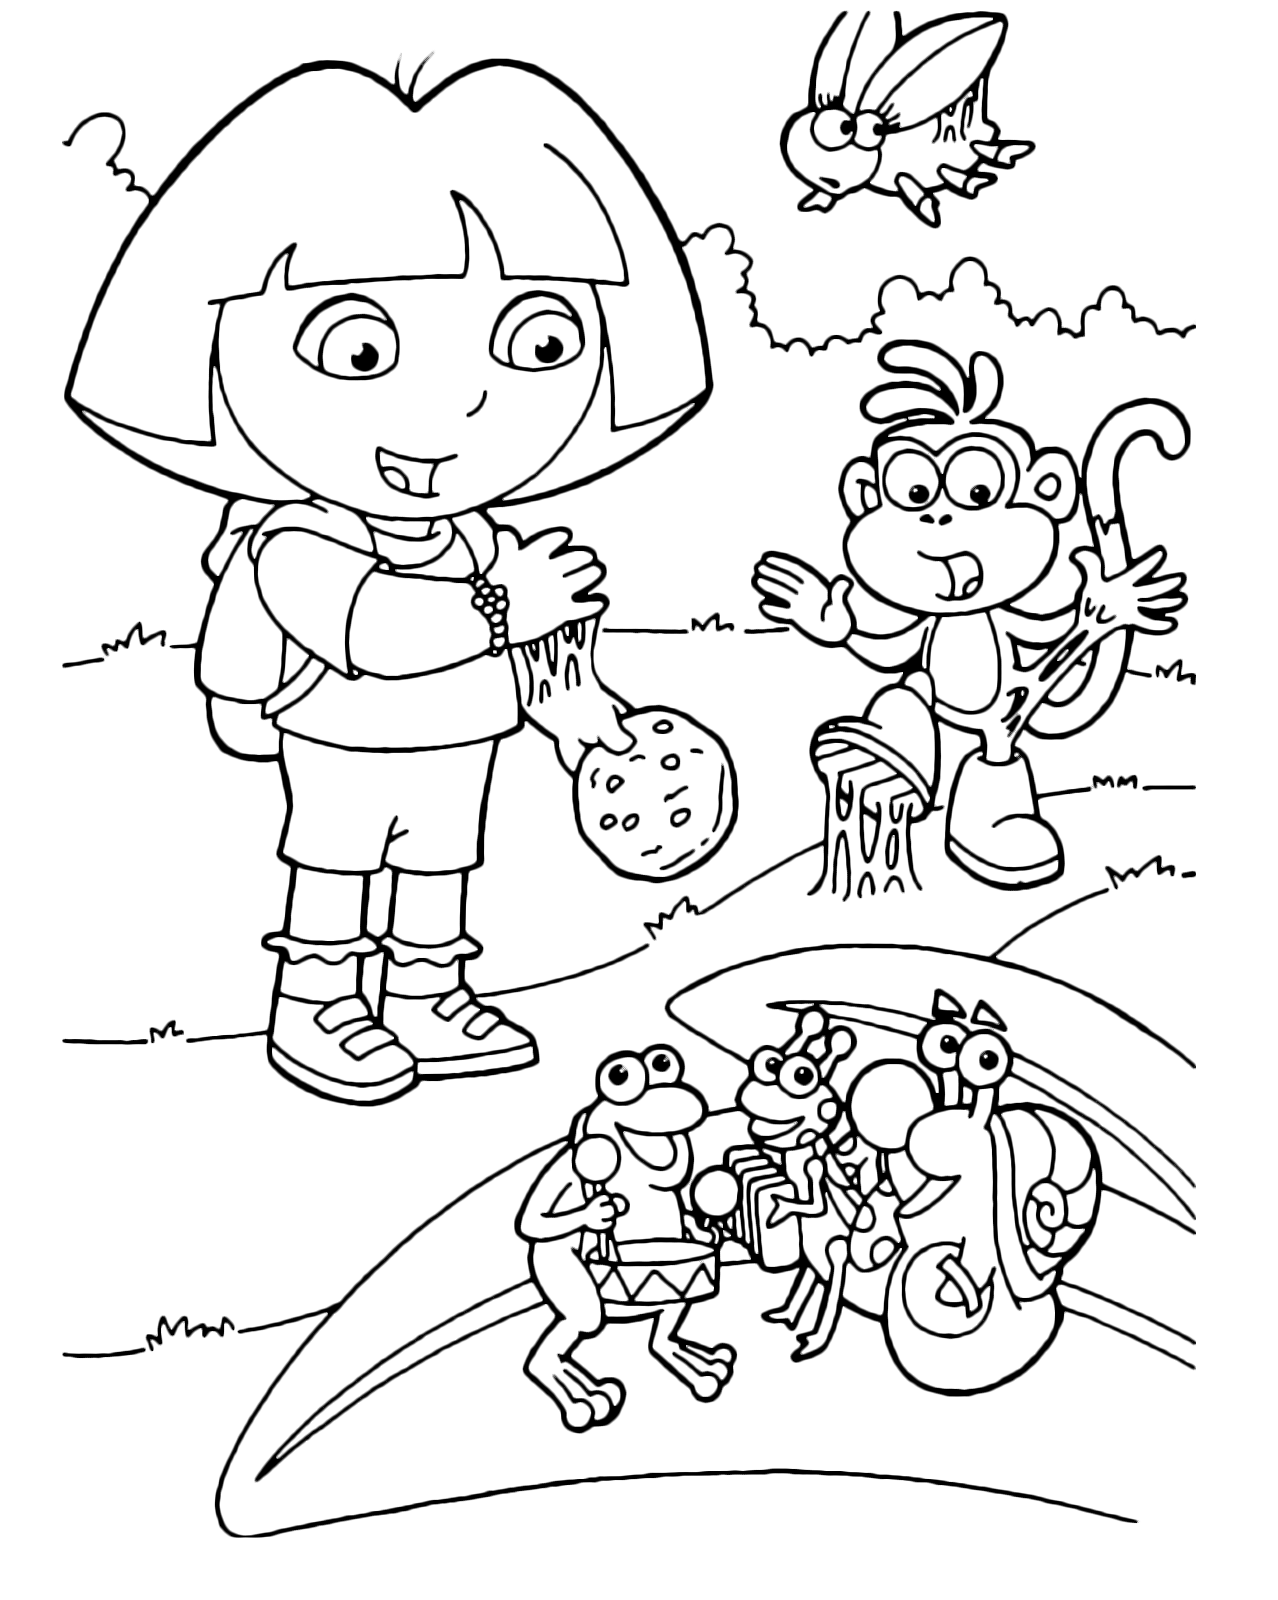 Dora l'esploratrice - Dora e Boots hanno trovato una sostanza appiccicosa